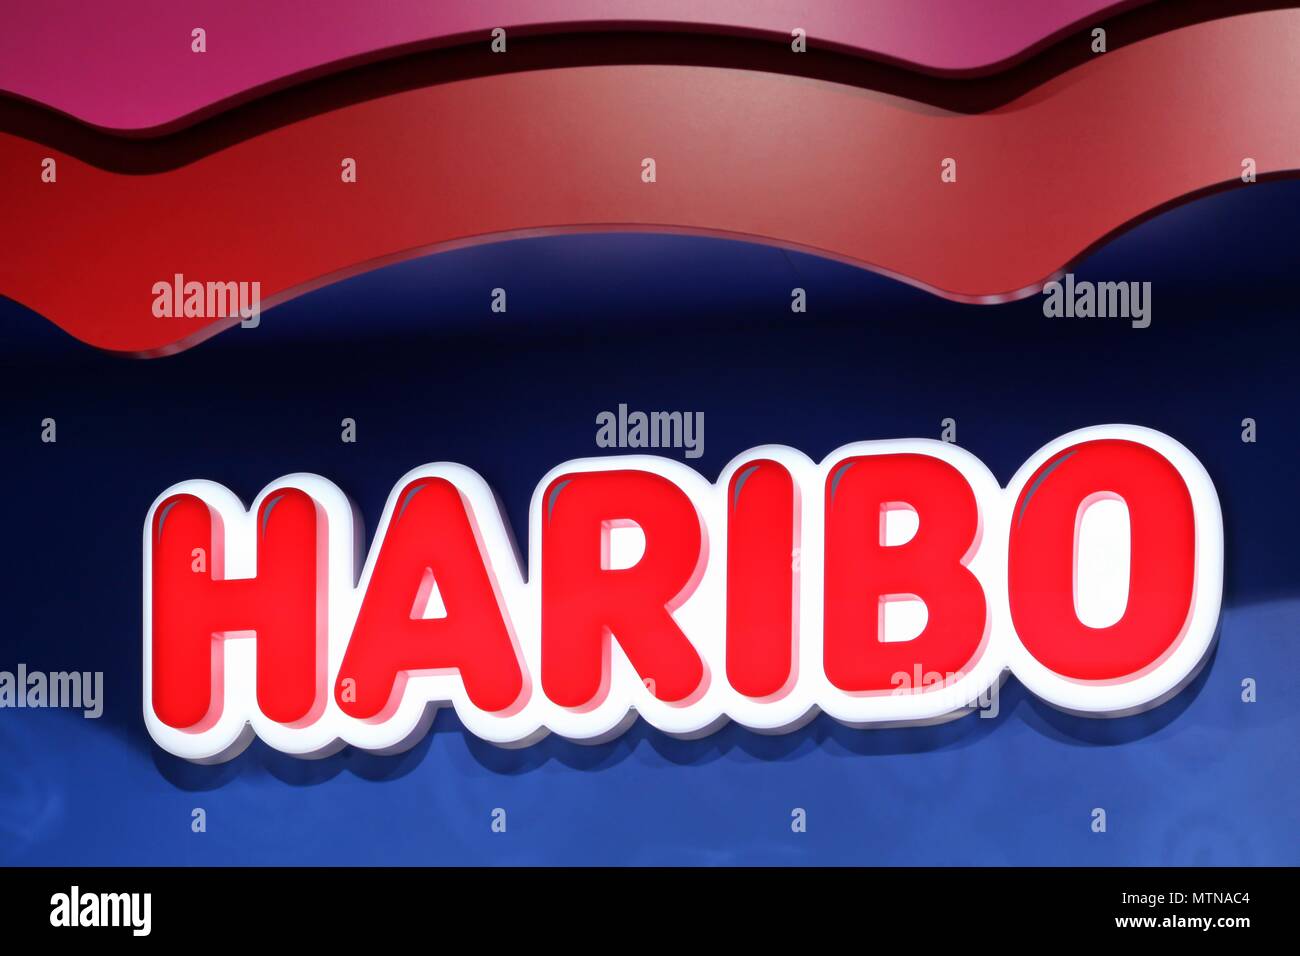 Villefontaine, France - 24 mai 2018 : Haribo logo sur un mur. Haribo est une entreprise de confiserie allemande, fondée en 1920 Banque D'Images